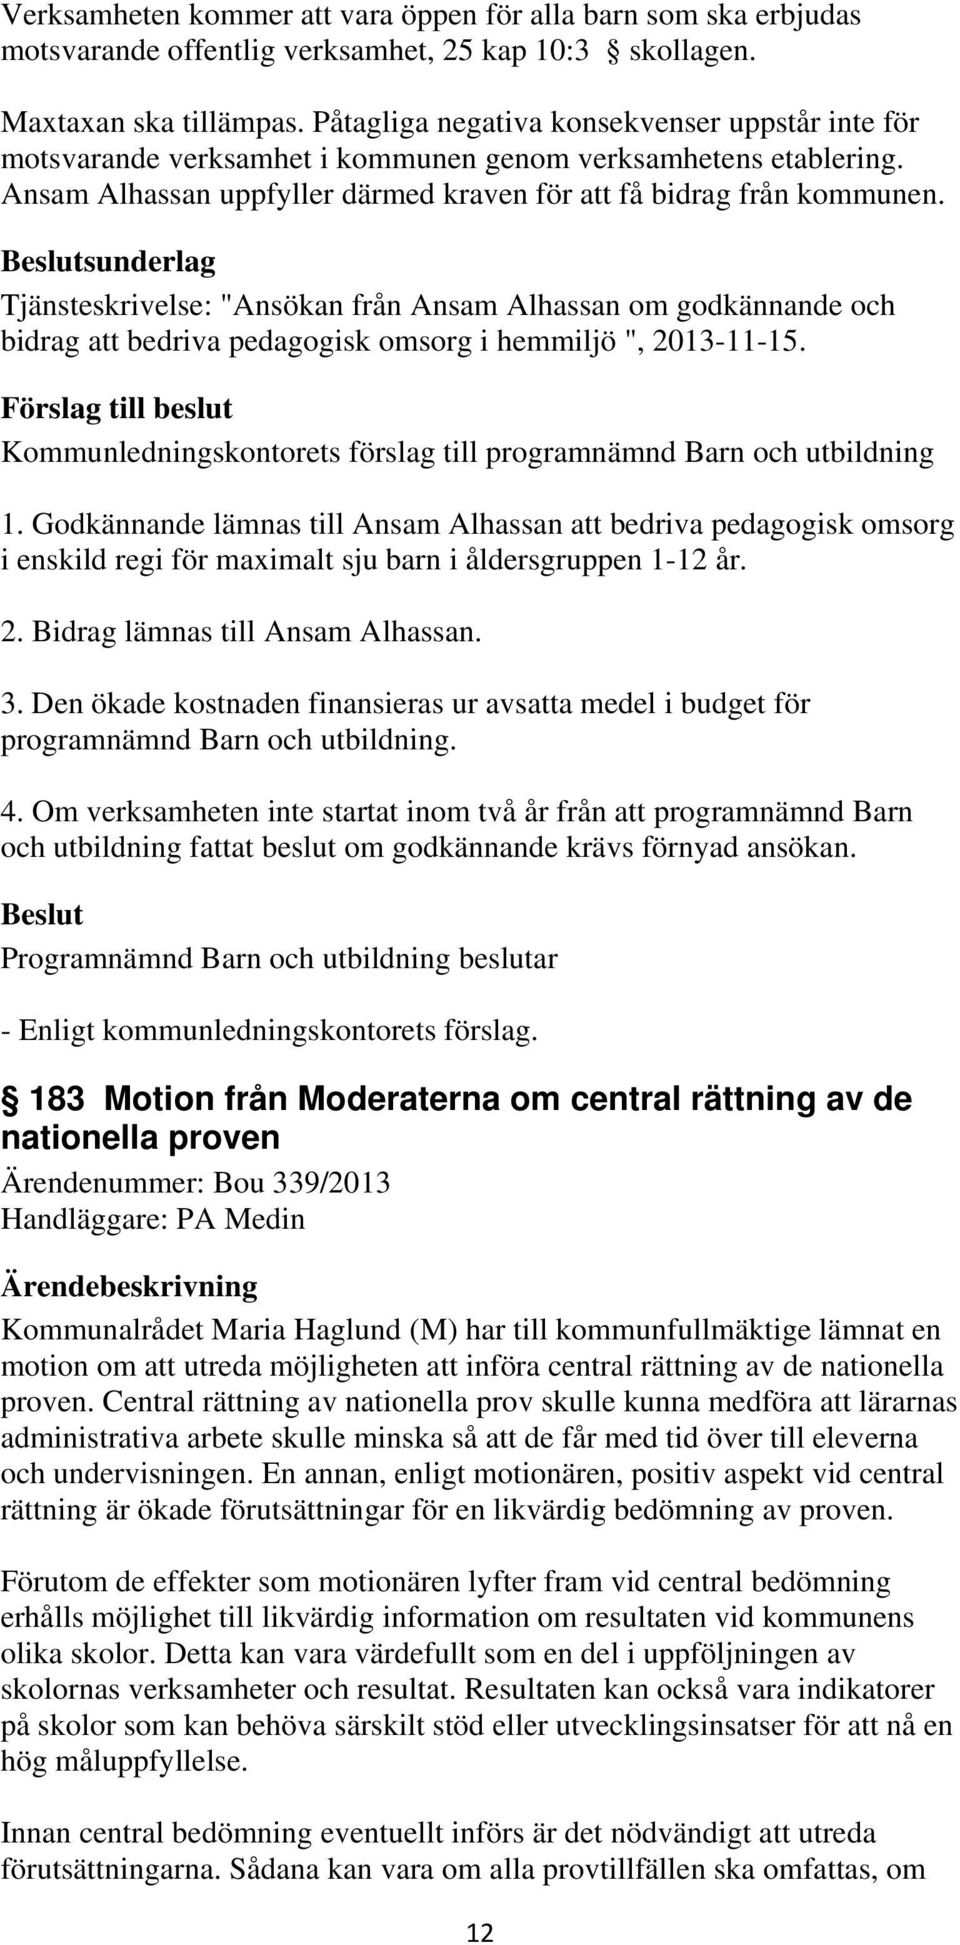 Beslutsunderlag Tjänsteskrivelse: "Ansökan från Ansam Alhassan om godkännande och bidrag att bedriva pedagogisk omsorg i hemmiljö ", 2013-11-15.